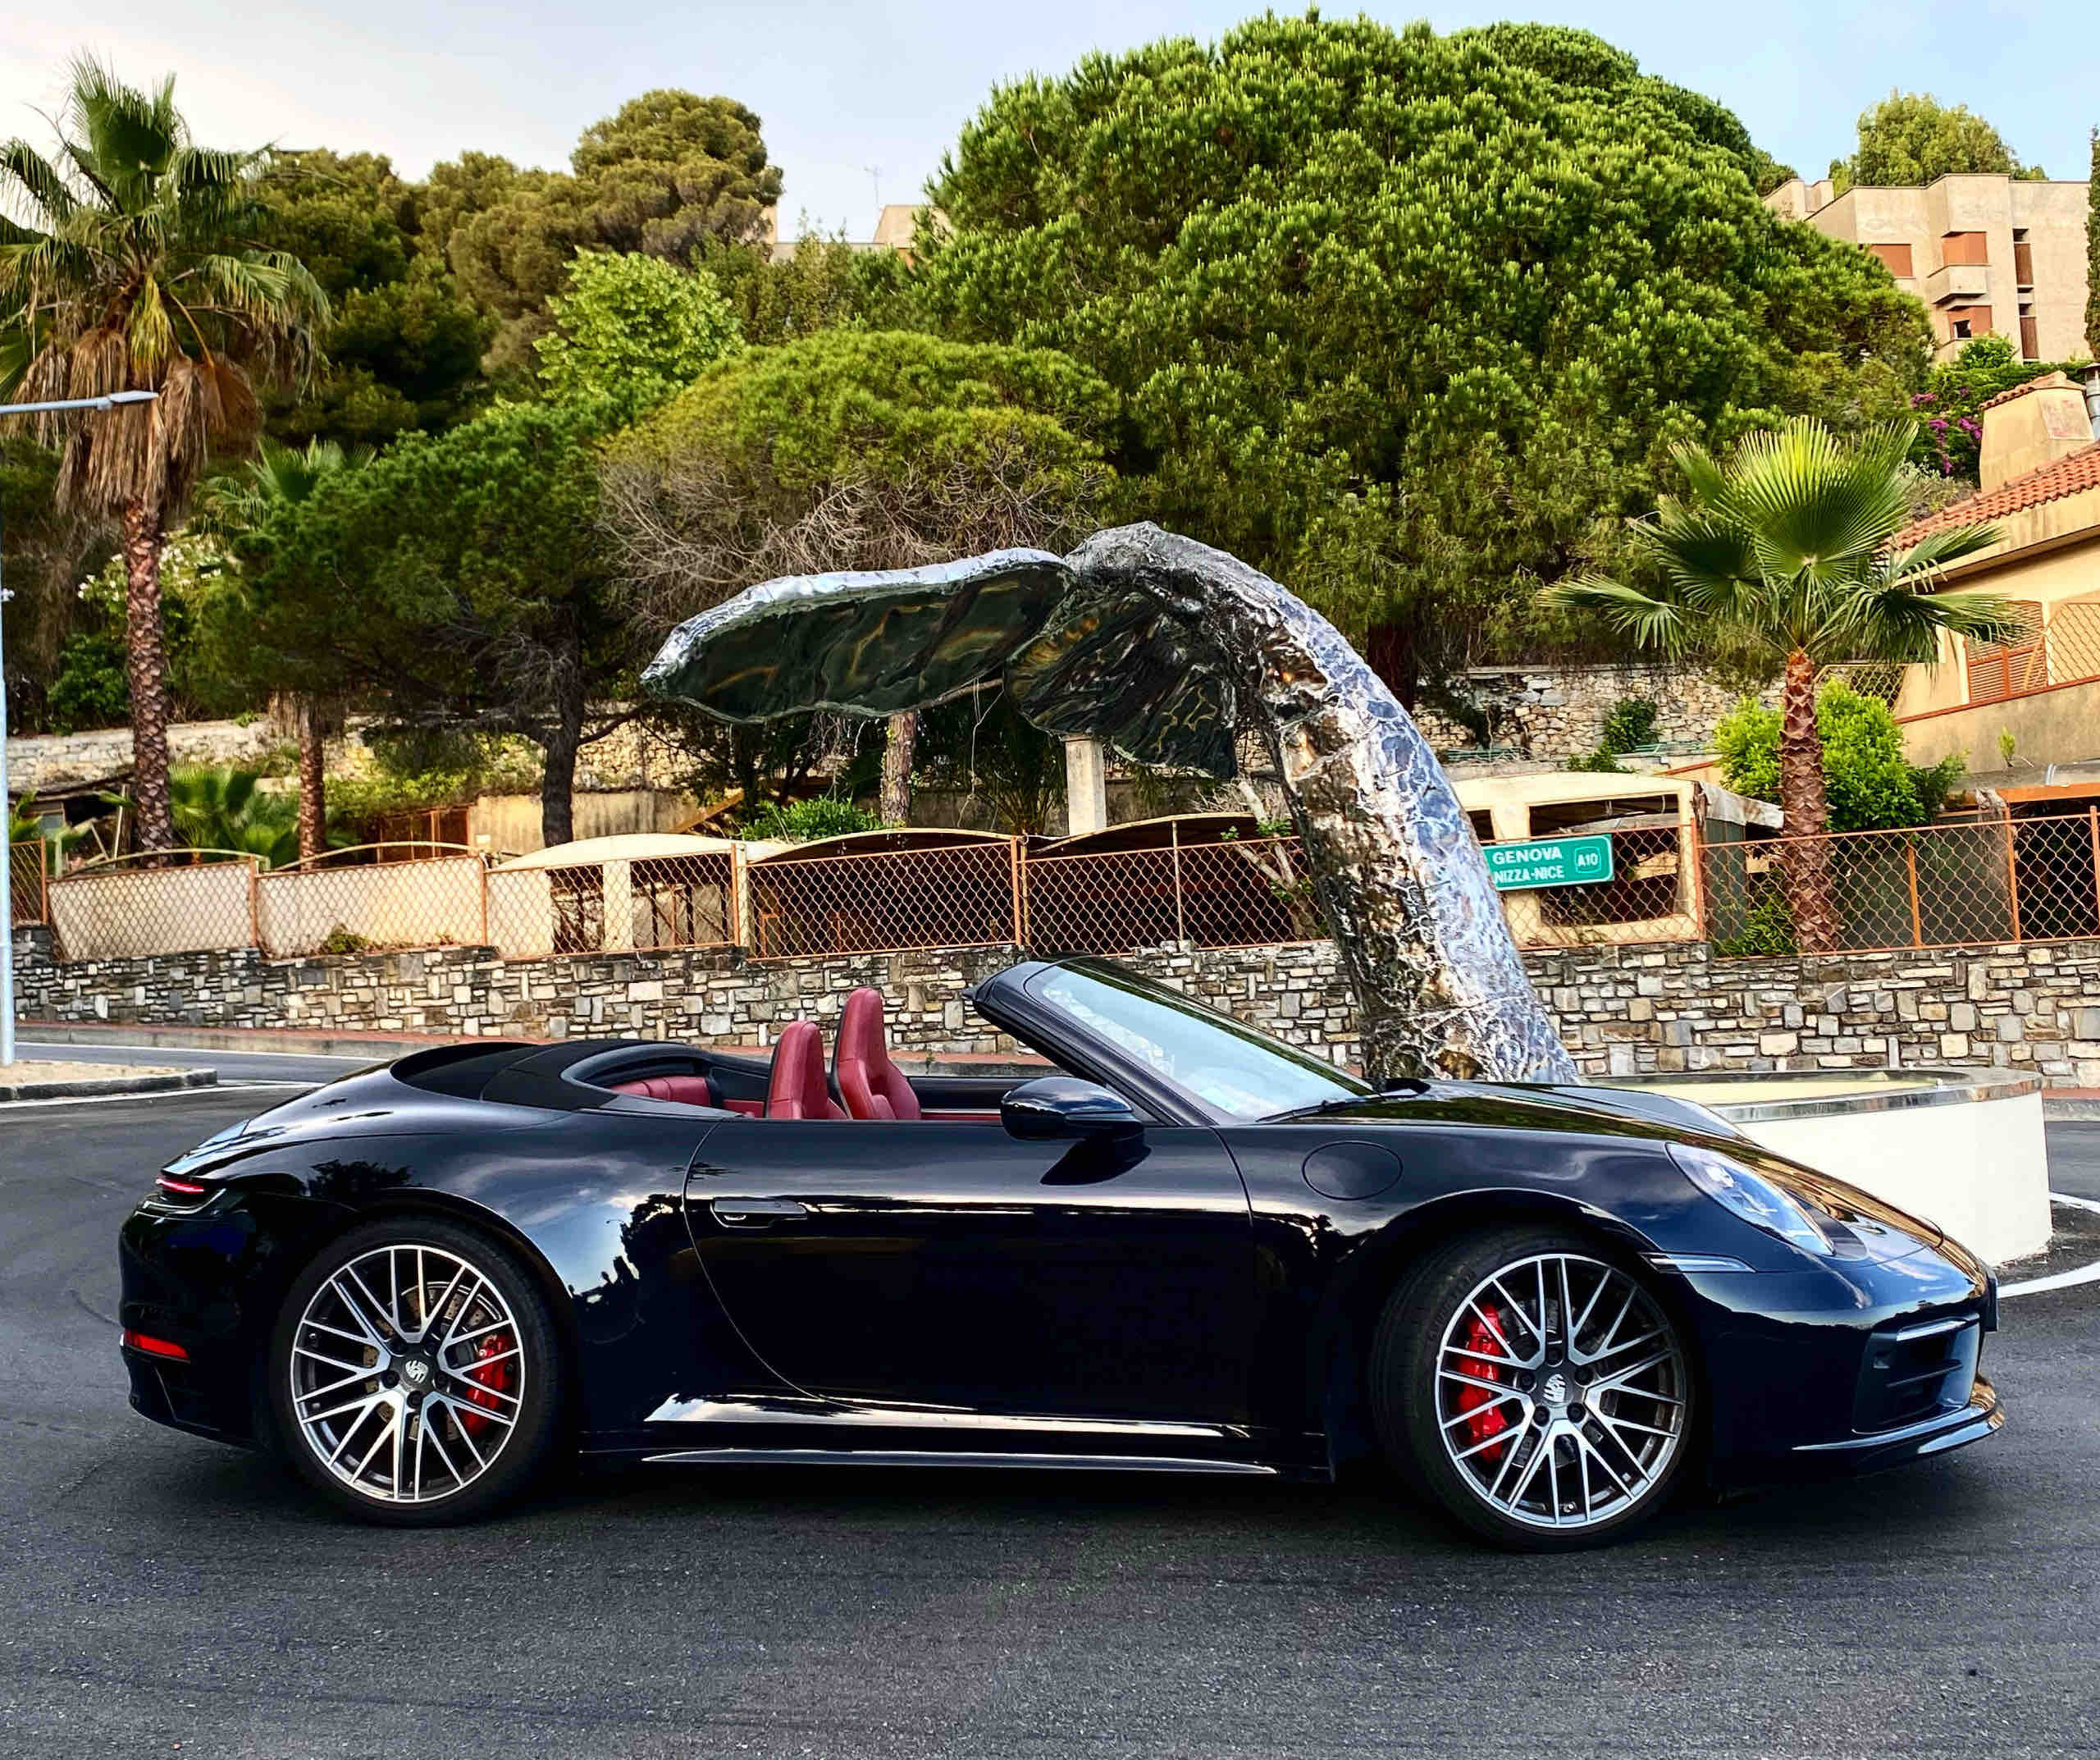 Hire luxury car Monaco